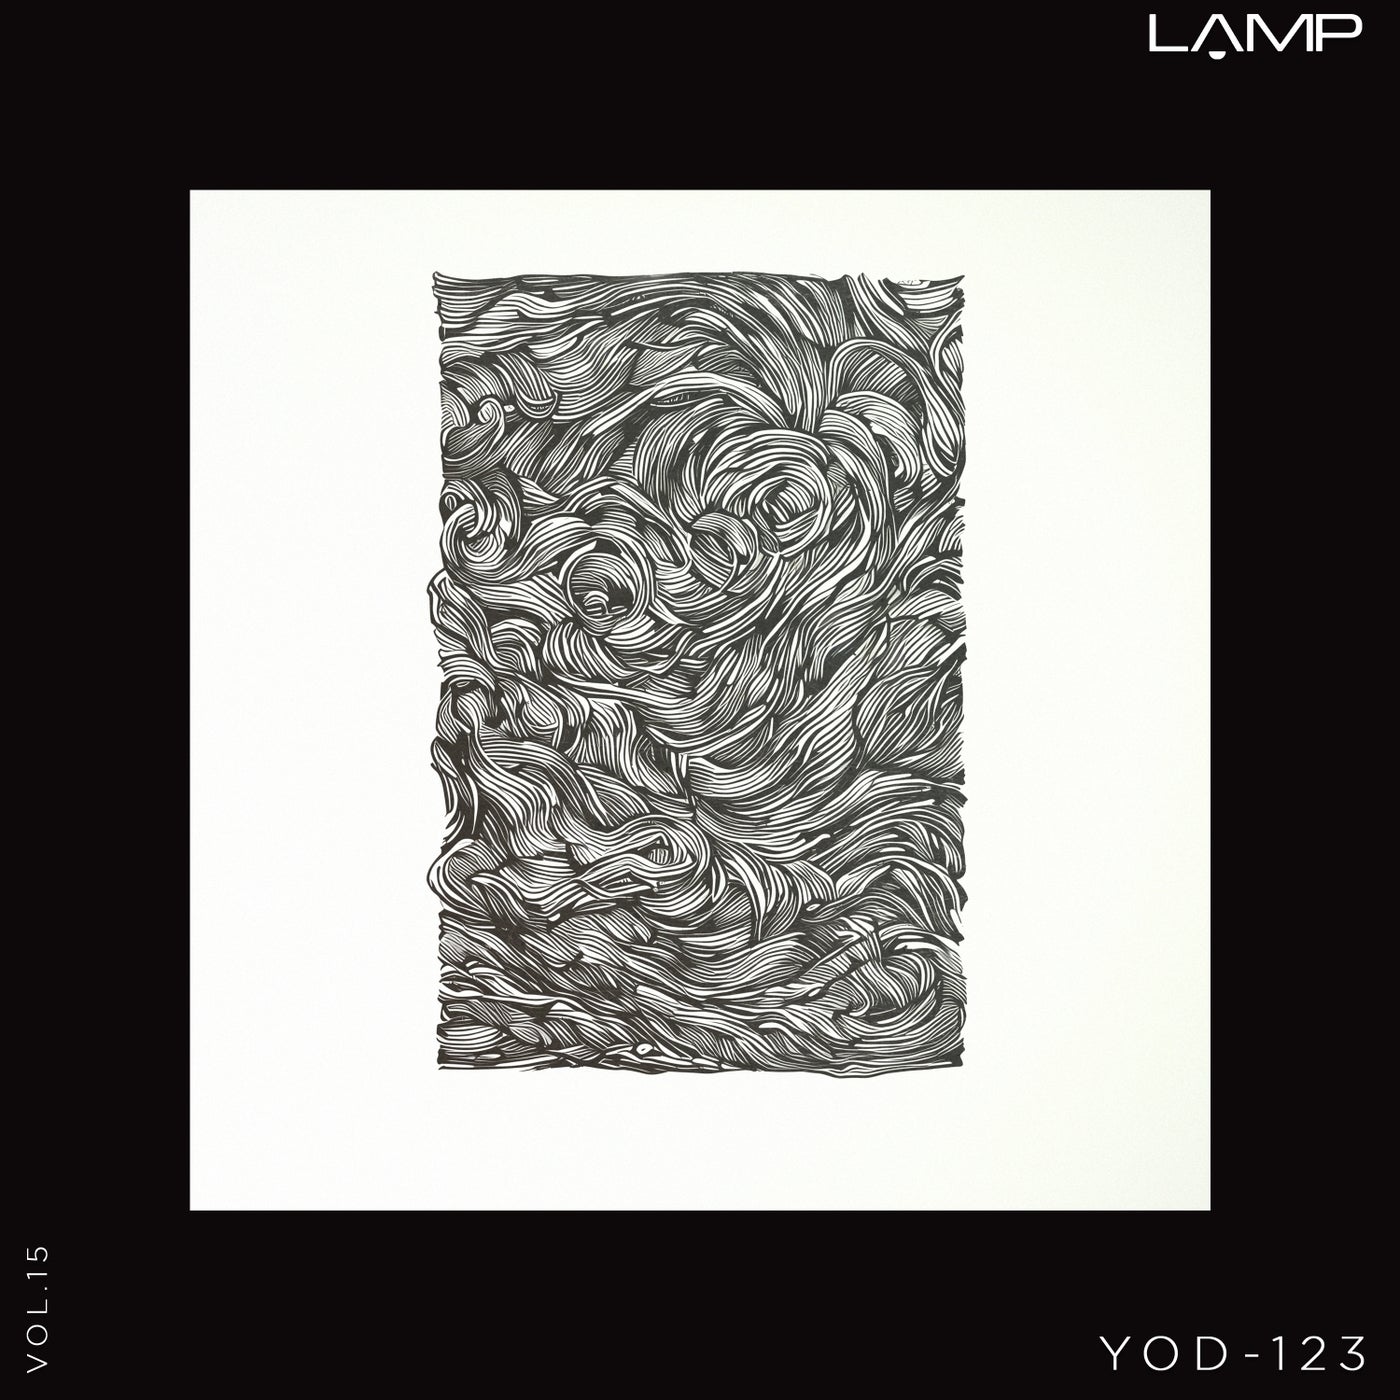 Yod-123, Vol. 15